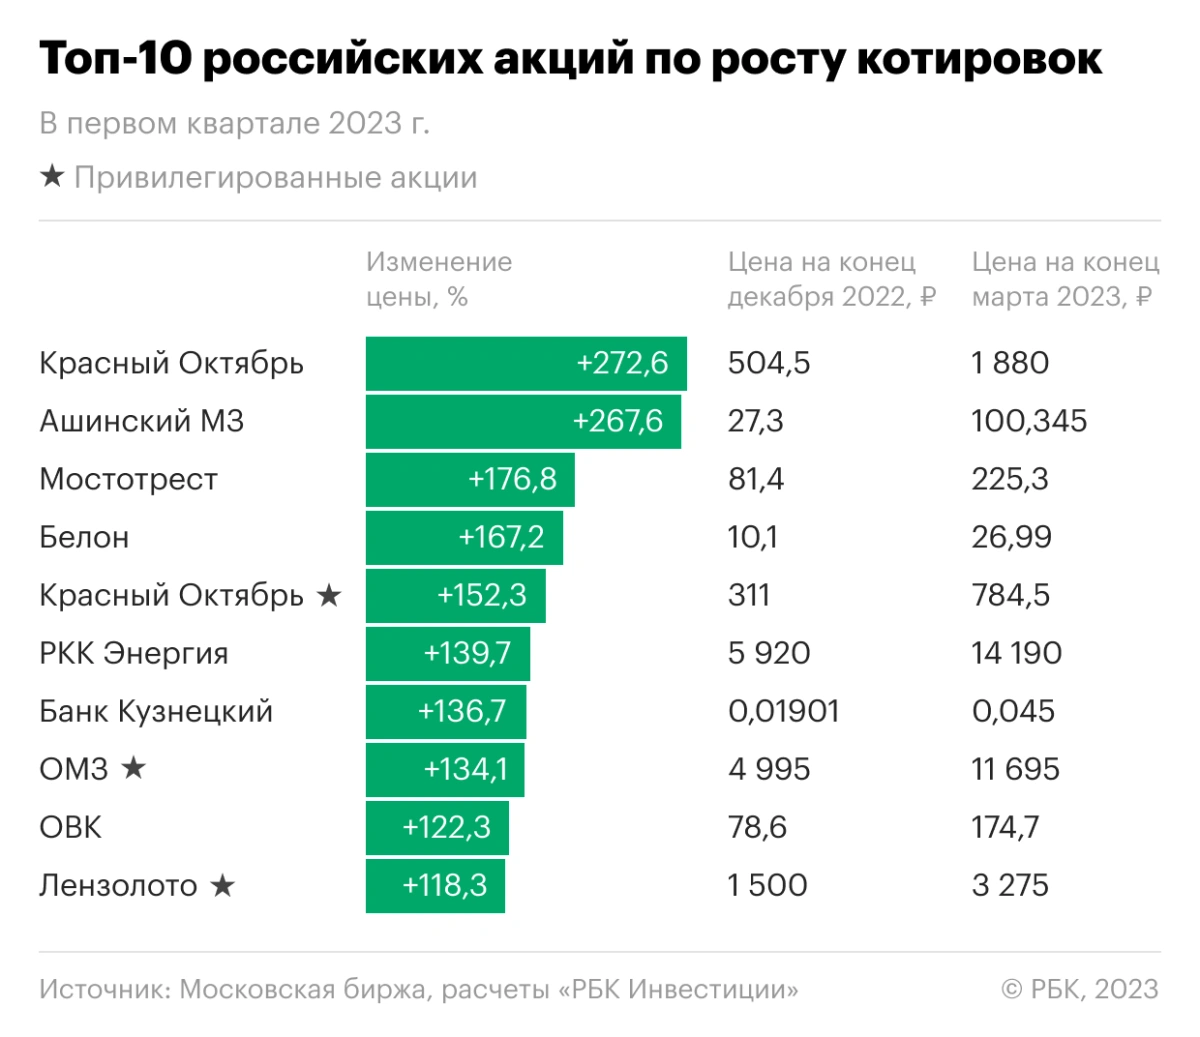 Десять лучших акций российских компаний в первом квартале 2023 года